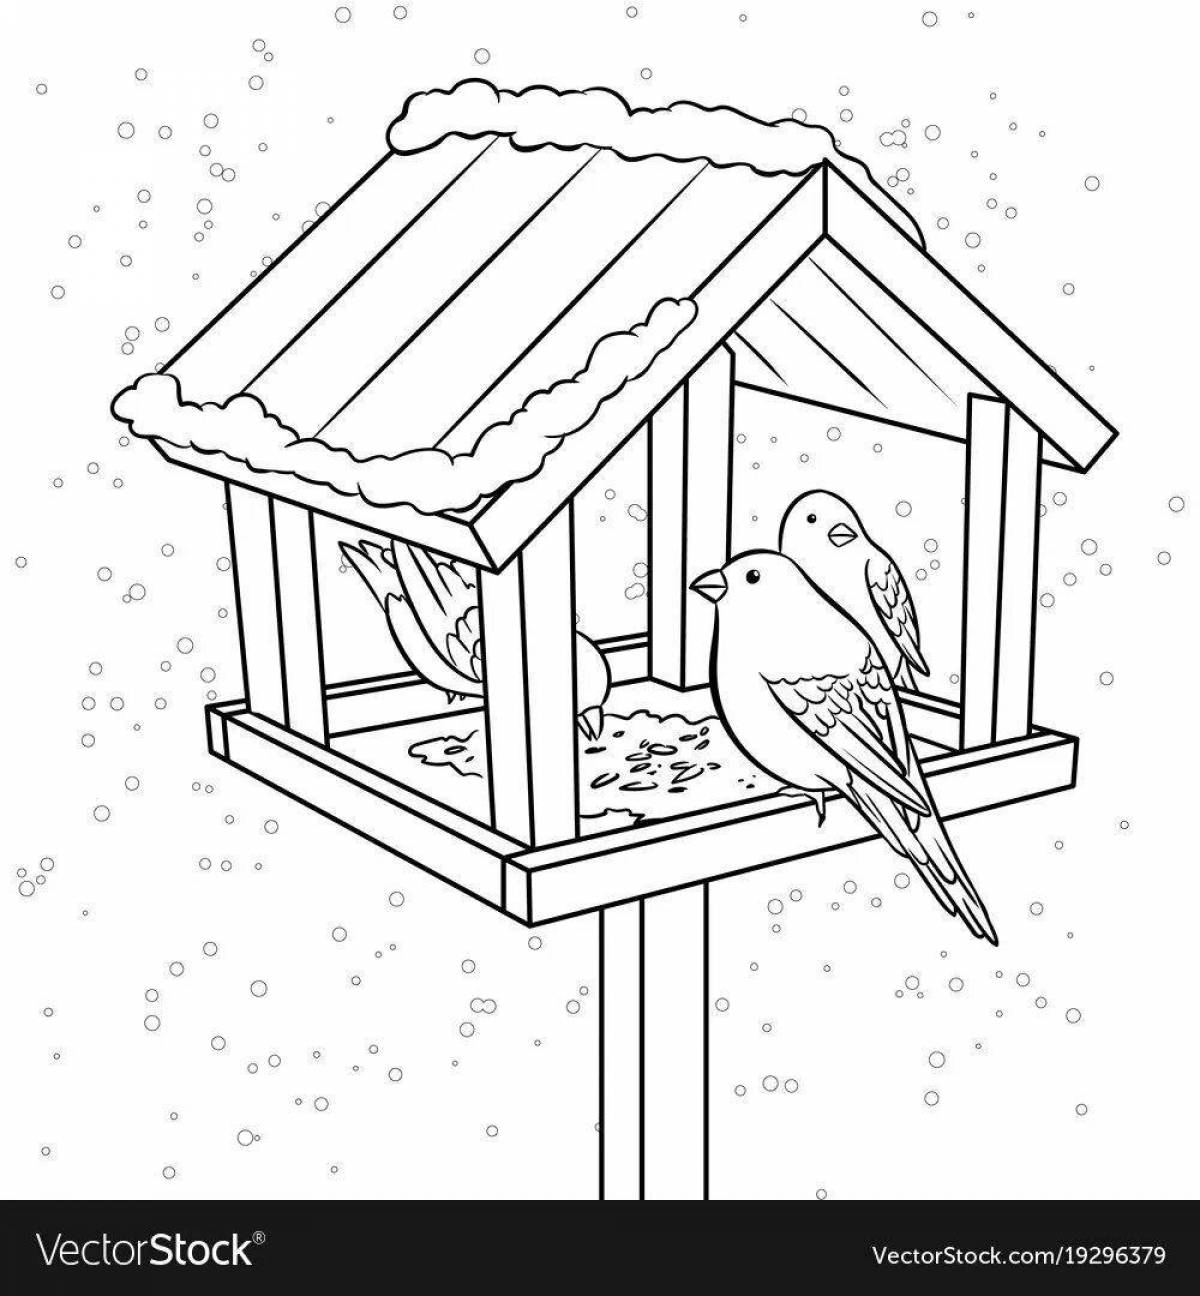 Serene children feed the birds at the bird feeder in winter